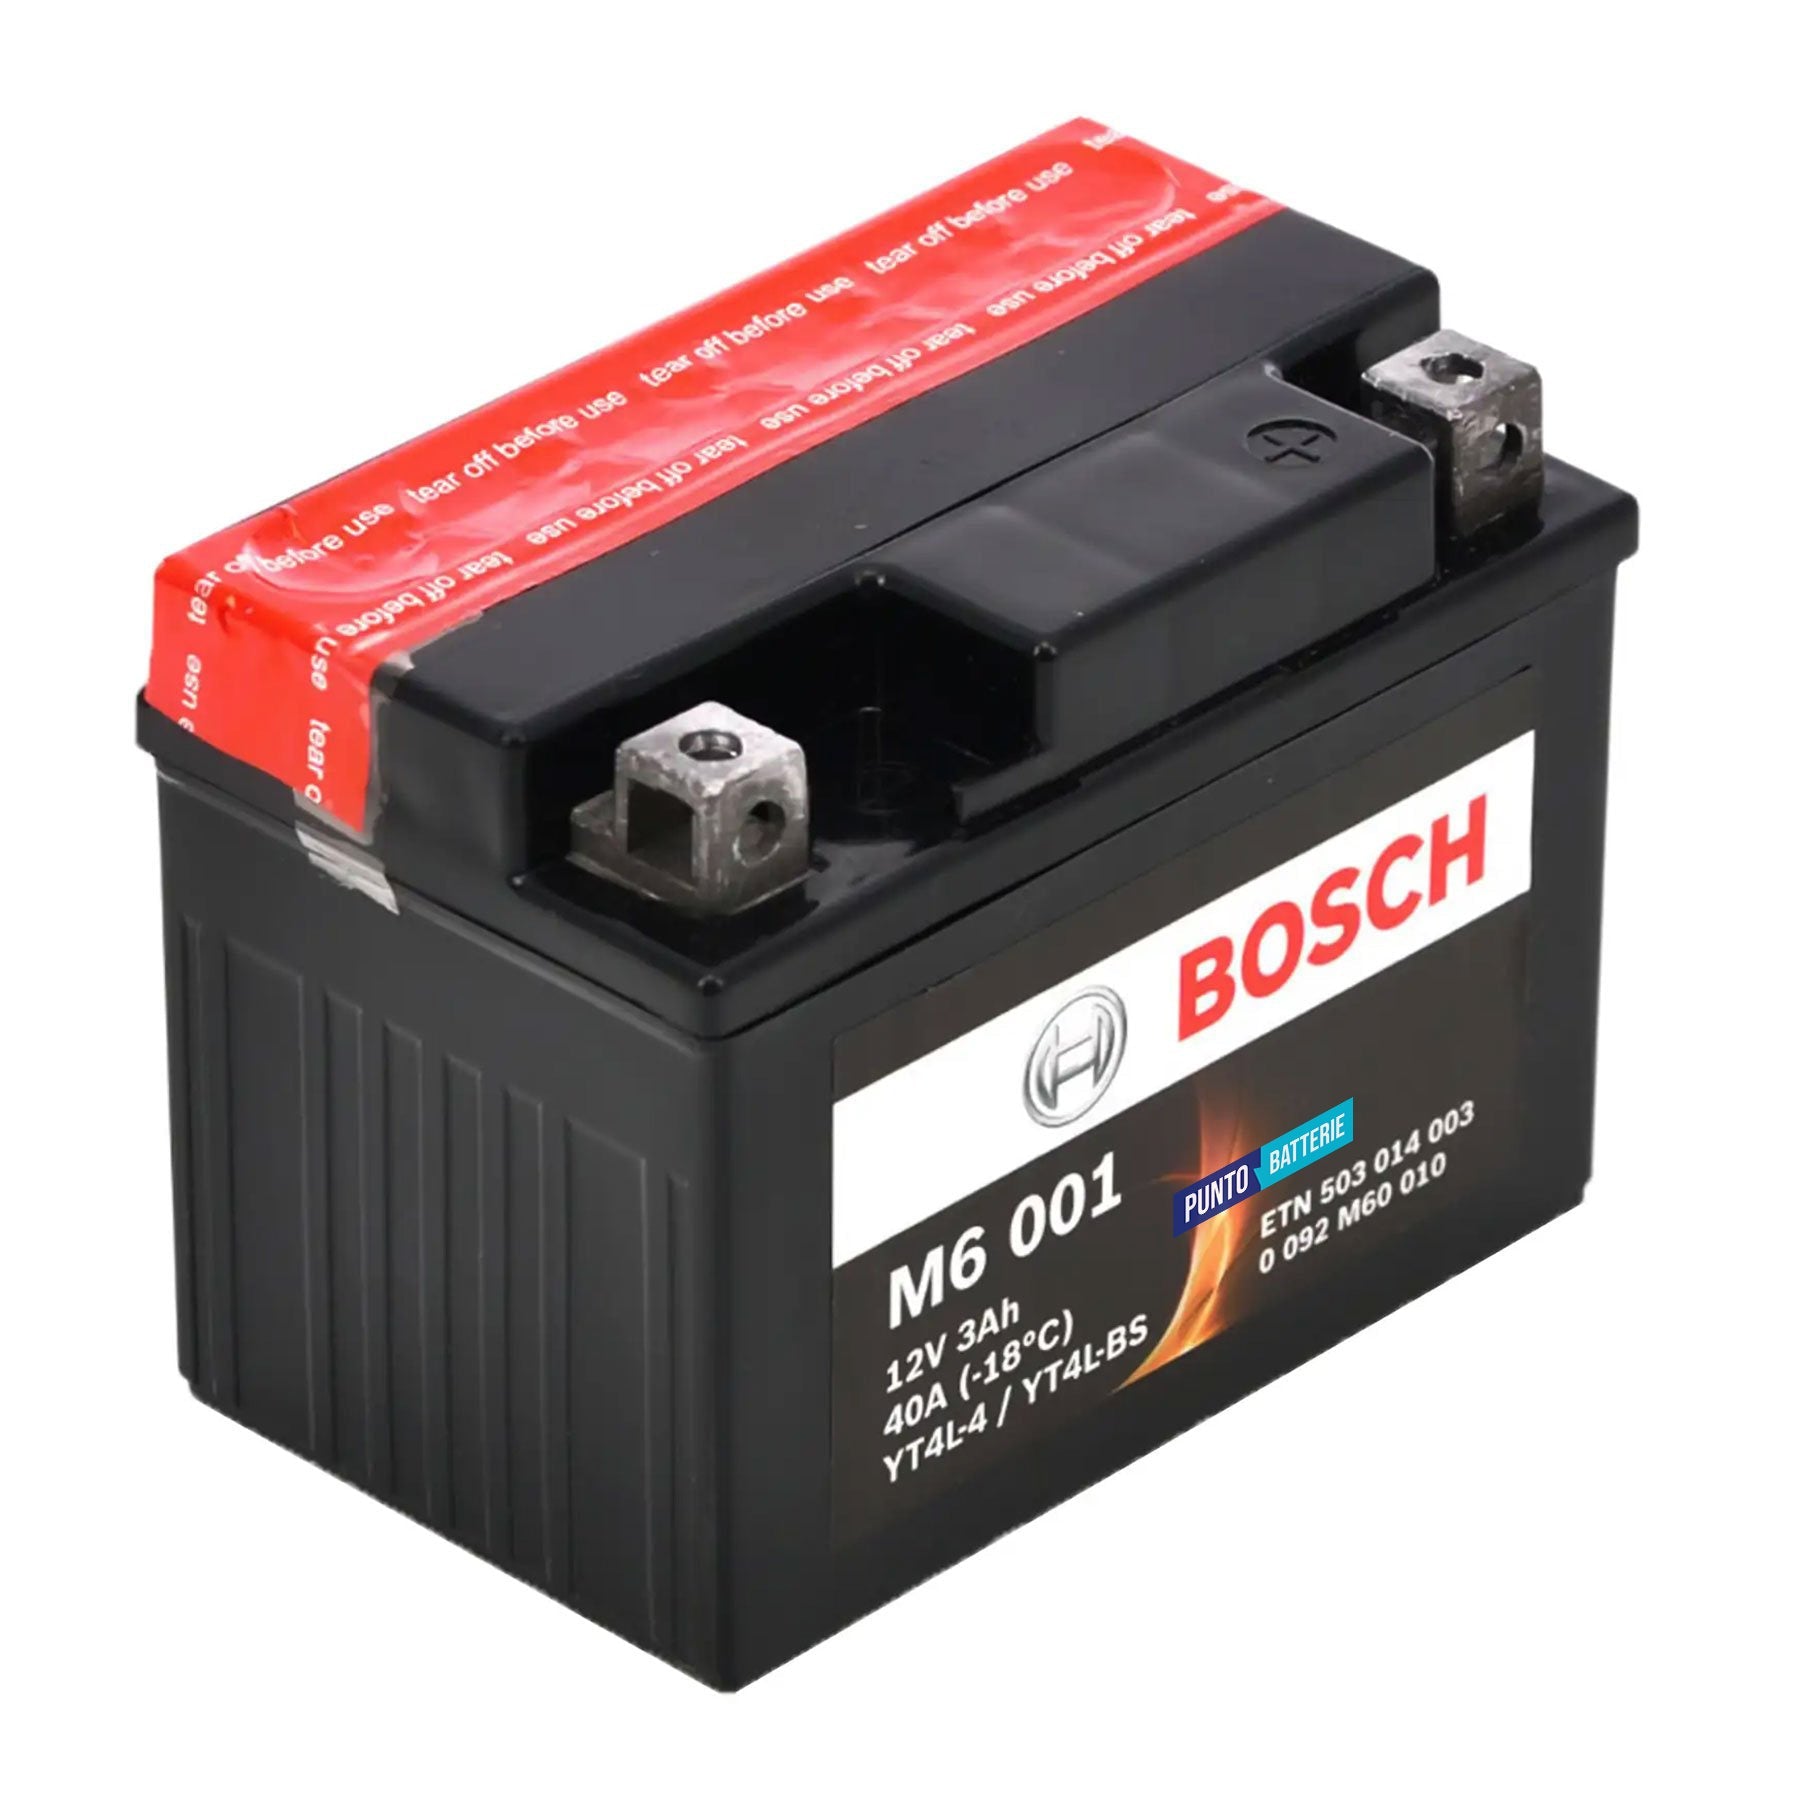 Batteria originale Bosch M6 M6001, dimensioni 165 x 130 x 176, polo positivo a destra, 12 volt, 3 amperora, 40 ampere. Batteria per moto, scooter e powersport.